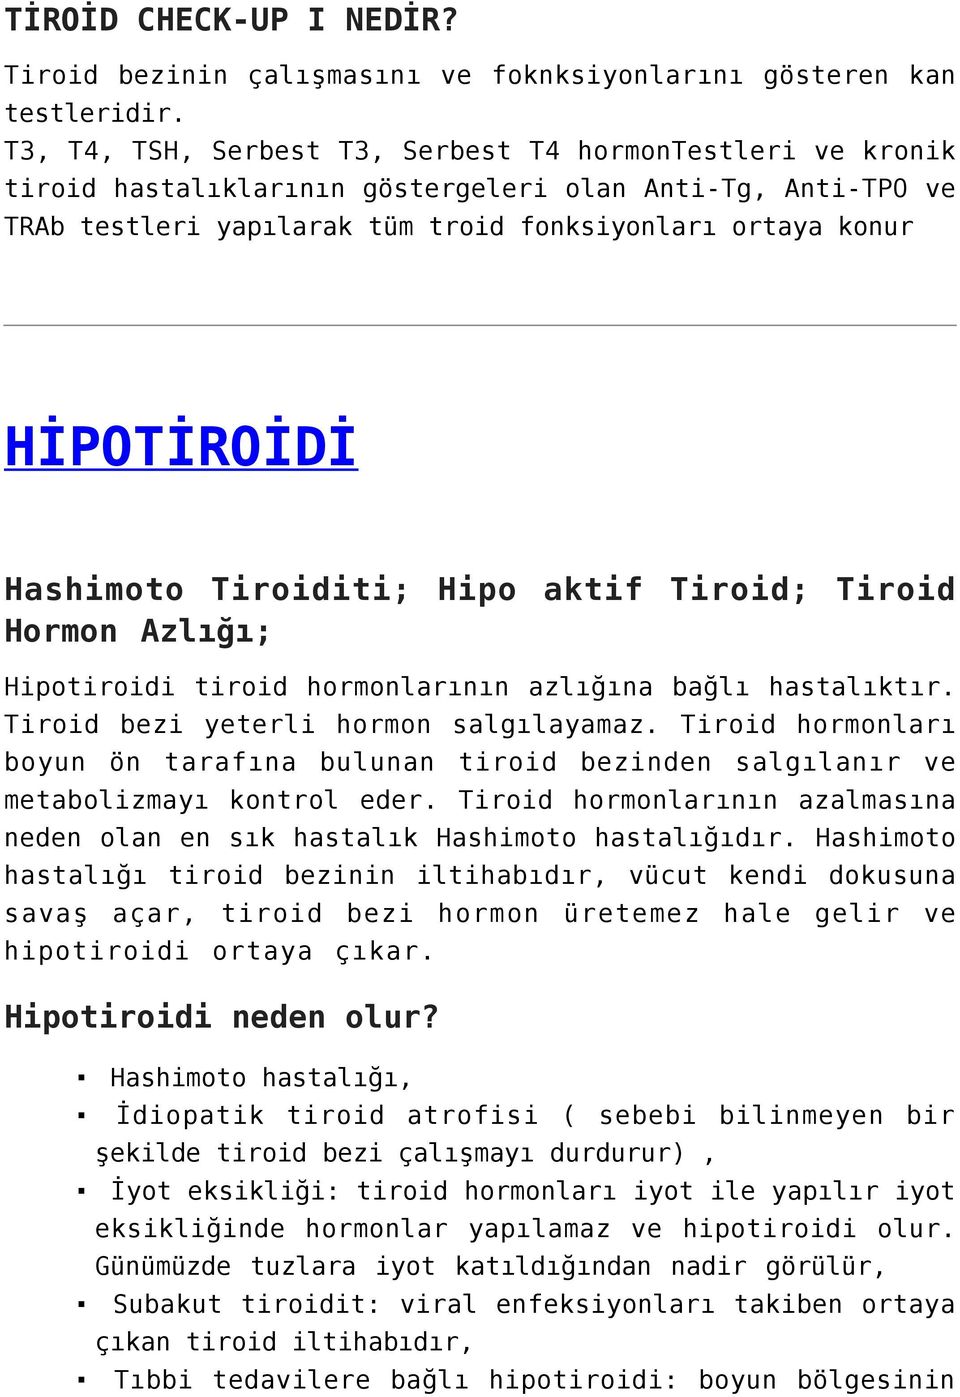 Hashimoto Tiroiditi; Hipo aktif Tiroid; Tiroid Hormon Azlığı; Hipotiroidi tiroid hormonlarının azlığına bağlı hastalıktır. Tiroid bezi yeterli hormon salgılayamaz.